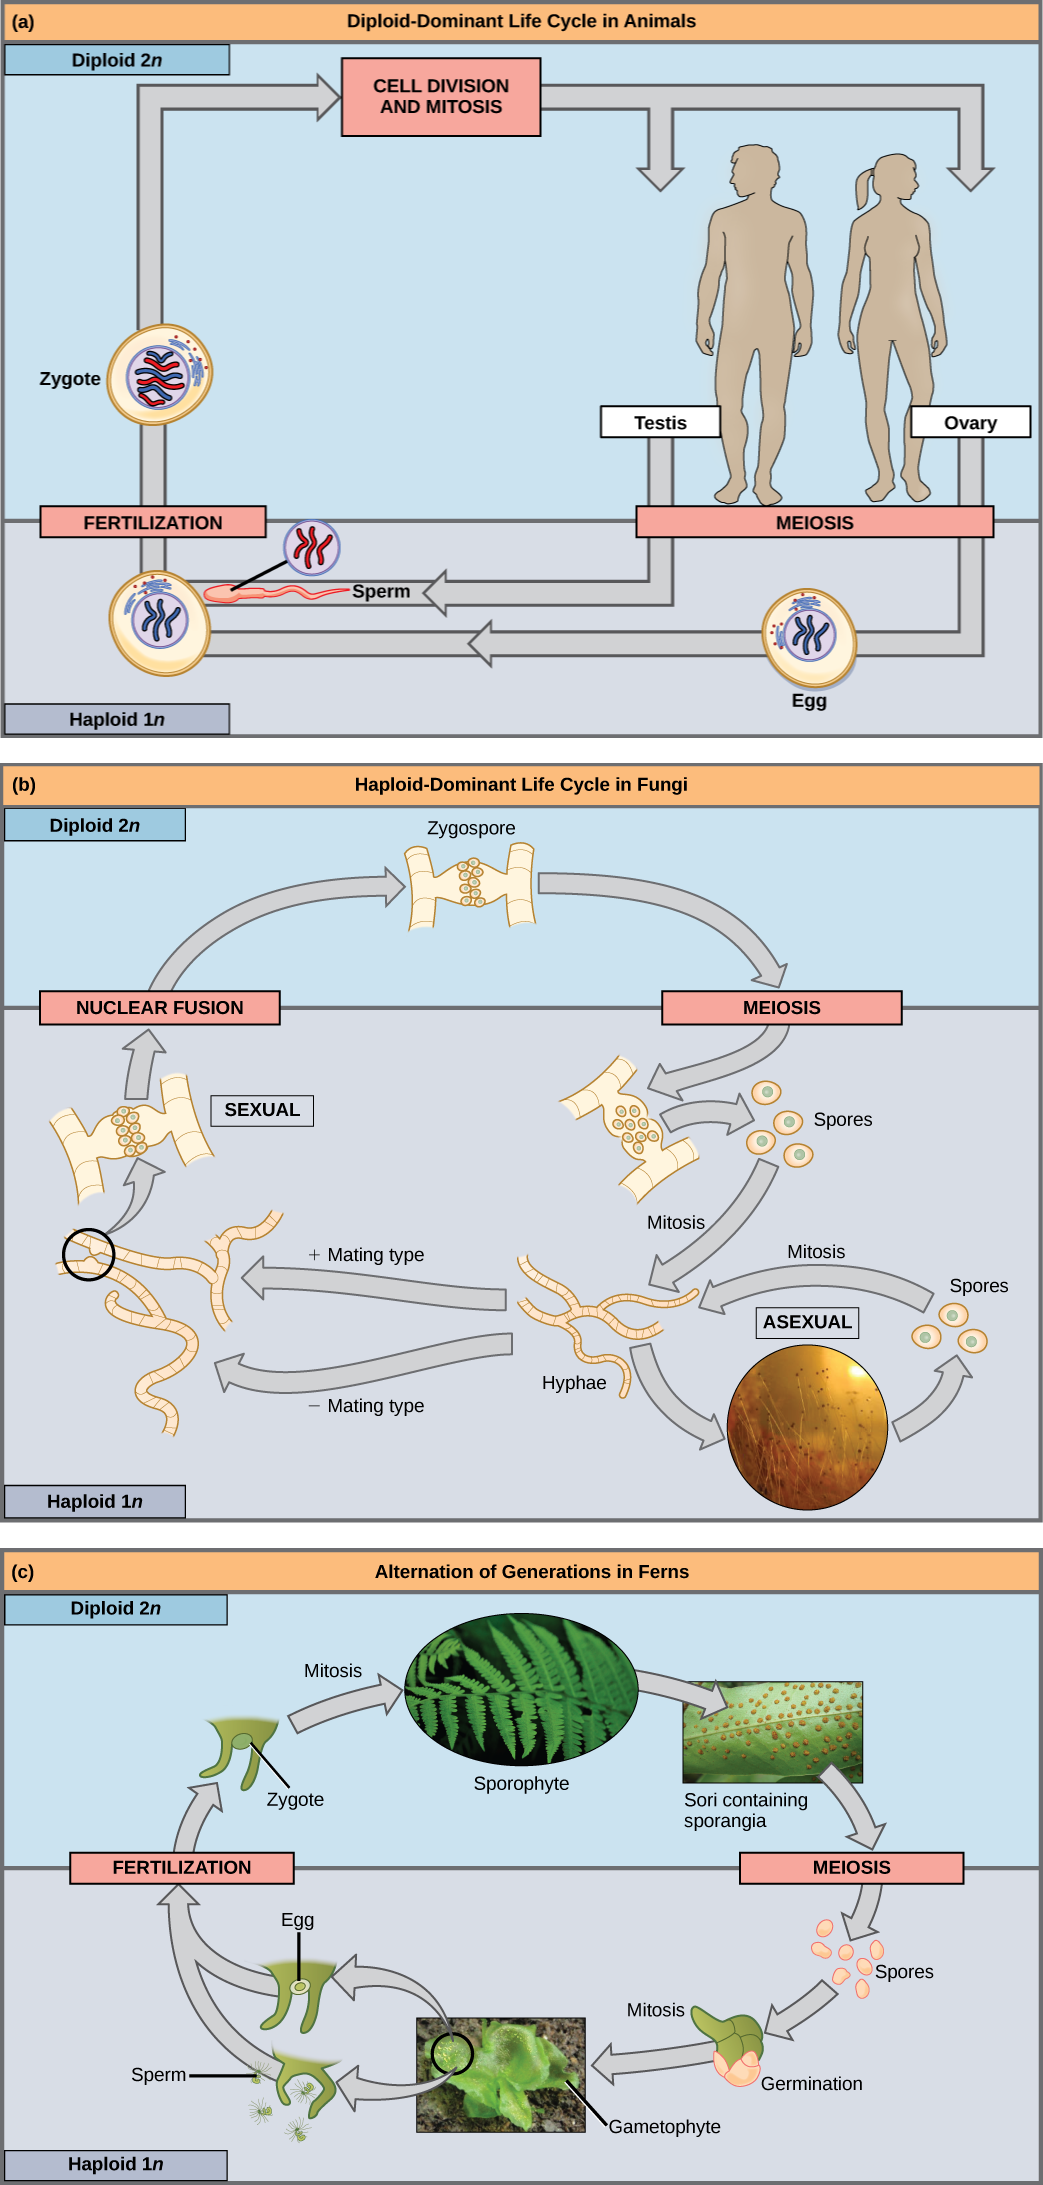 La parte A muestra el ciclo de vida de los animales. A través de la meiosis, los machos adultos producen espermatozoides haploides (1n) y las hembras adultas producen óvulos haploides. Tras la fertilización, se forma un cigoto diploide (2n), que se convierte en un adulto a través de la mitosis y la división celular. La parte b muestra el ciclo de vida de los hongos. En los hongos, la cigospora diploide (2n) sufre meiosis para formar esporas haploides (1n). La mitosis de las esporas se produce para formar hifas. Las hifas pueden someterse a reproducción asexual para formar más esporas, o forman tipos de apareamiento más y menos que se someten a fusión nuclear para formar una cigospora. La parte c muestra el ciclo de vida de las plantas de helecho. El cigoto diploide (2n) sufre mitosis para producir el esforófito, que es la planta familiar, frondosa. Se forman esporangios en la parte inferior de las hojas del esforófito. Los esporangios se someten a meiosis para formar esporas haploides (1n). Las esporas germinan y se someten a mitosis para formar un gametofito multicelular y frondoso. El gametofito produce óvulos y espermatozoides. Tras la fecundación, el óvulo y el esperma forman un cigoto diploide.